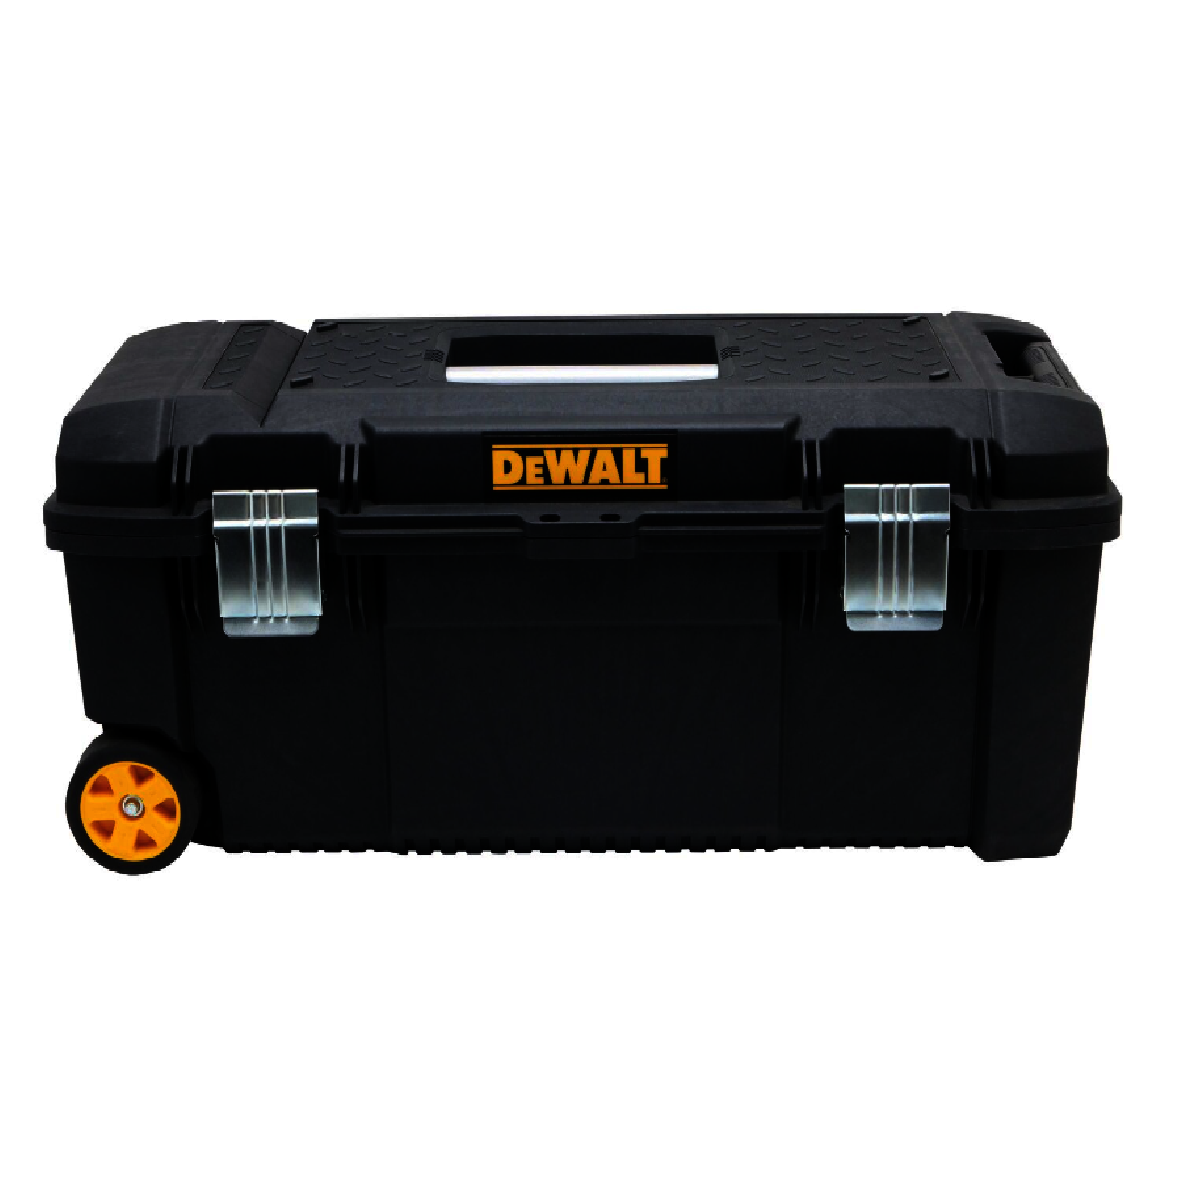 DeWalt DWST28100 28 in. Tool Box on Wheels